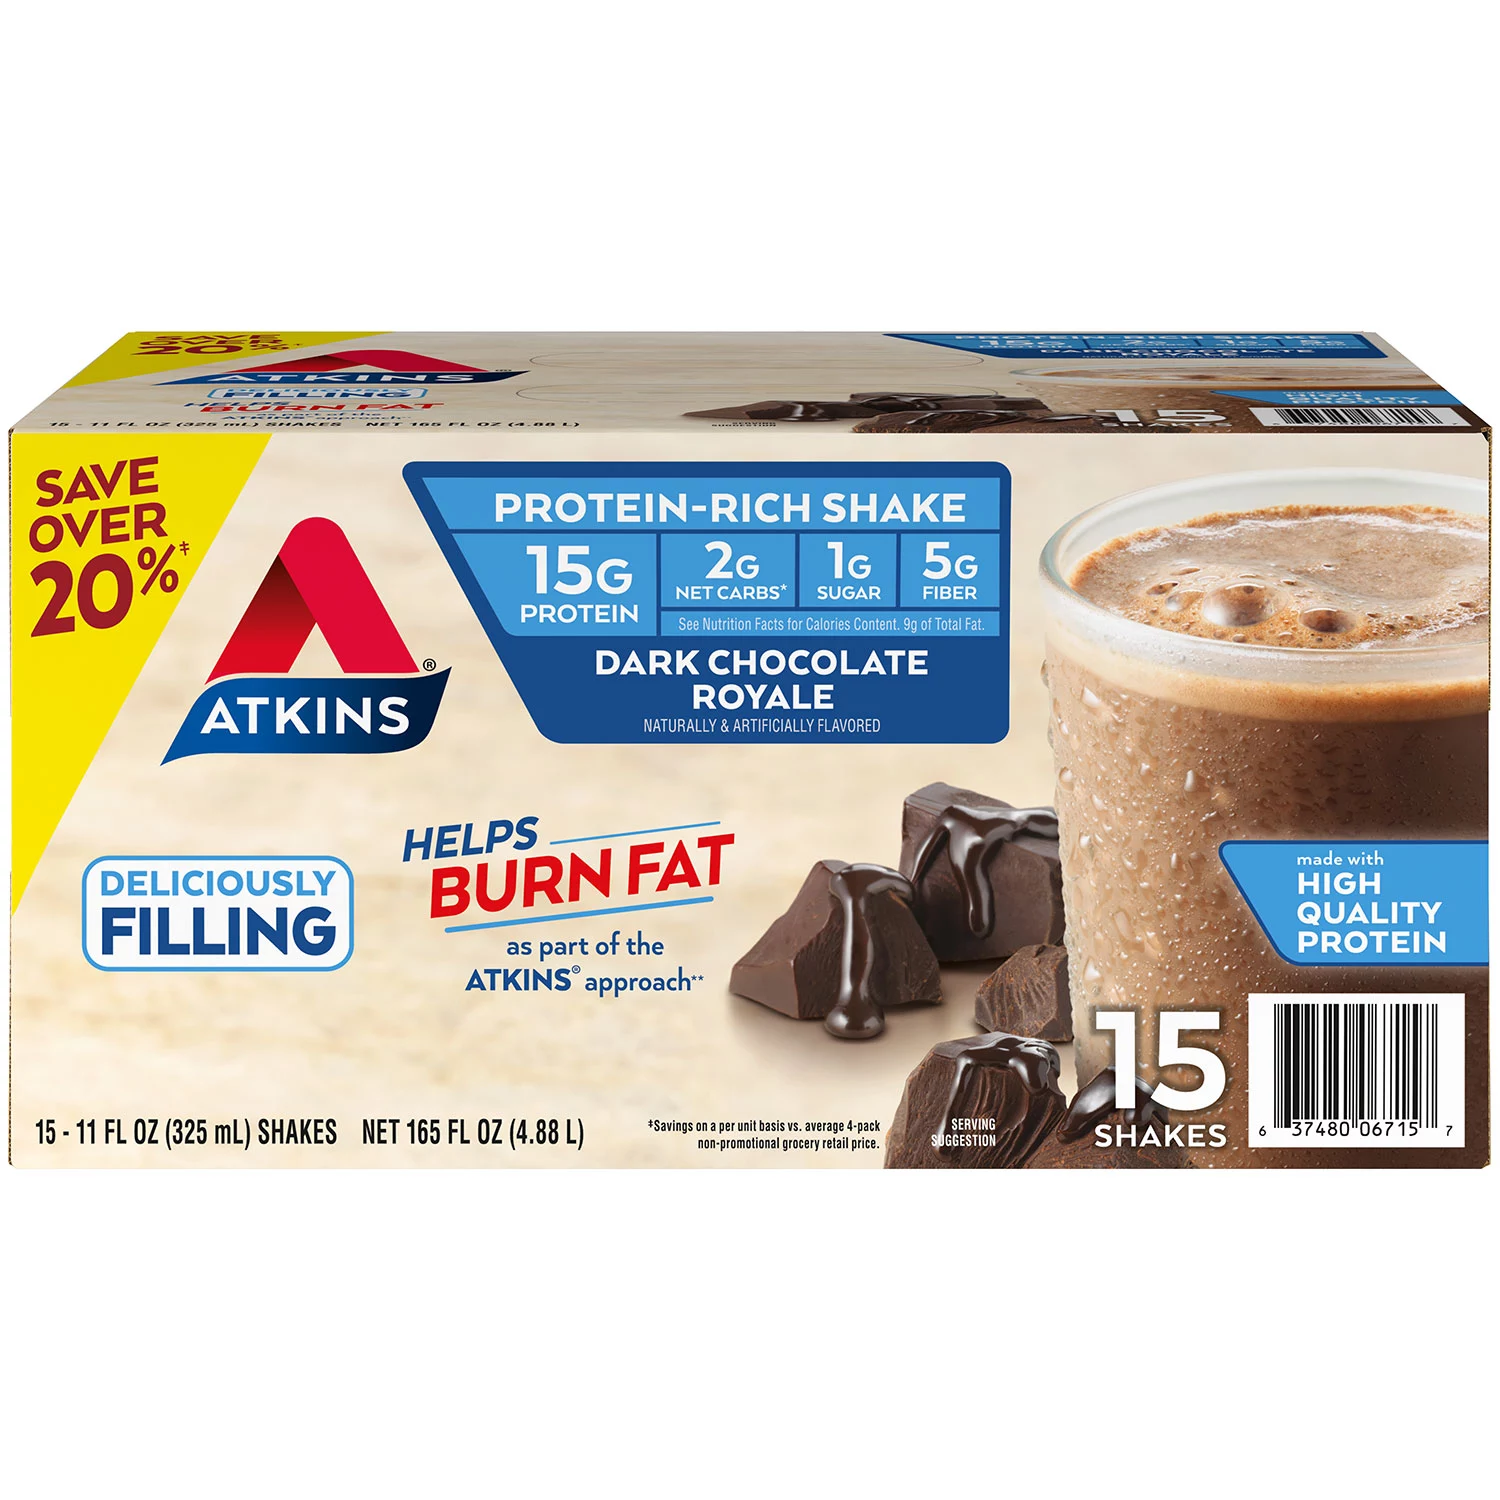 Atkins Gluten Free Protein-Rich Shake Dark Chocolate